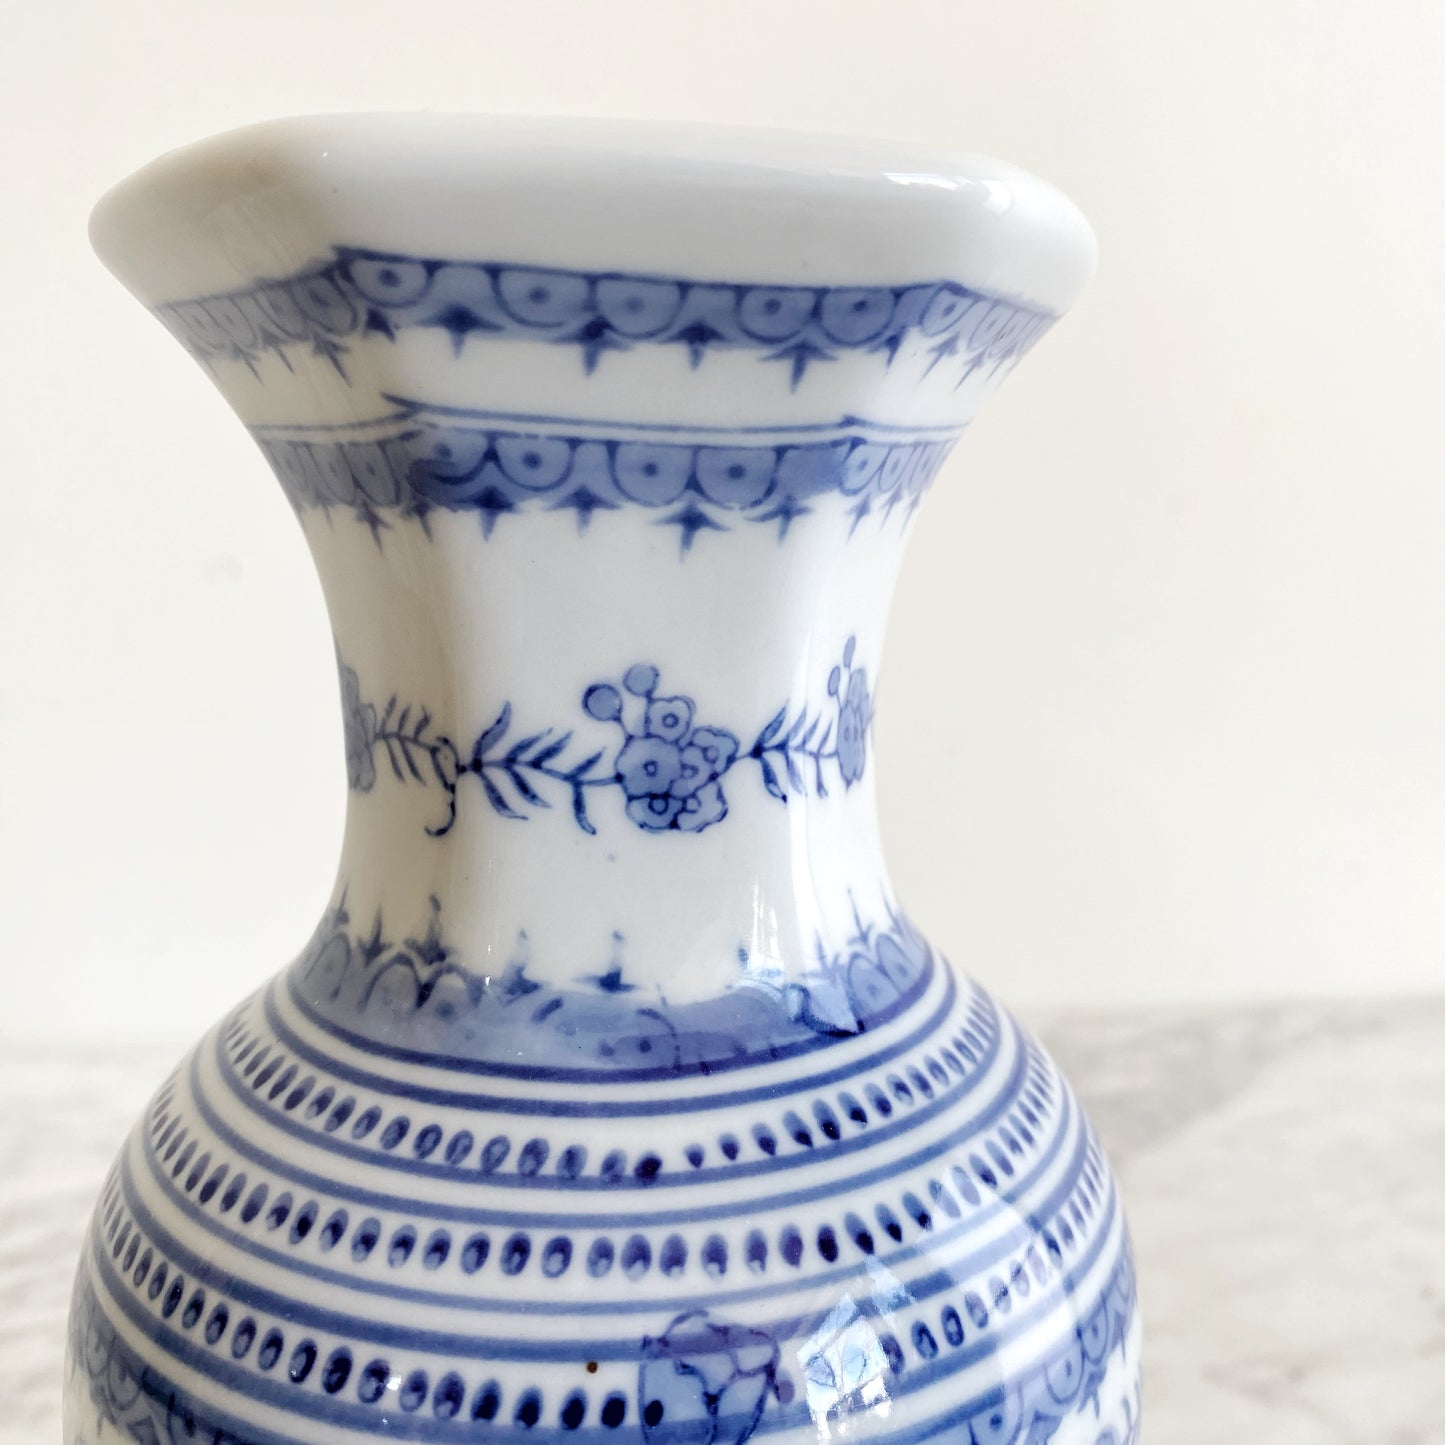 Vintage Blue + White Porcelain Vase, 8"